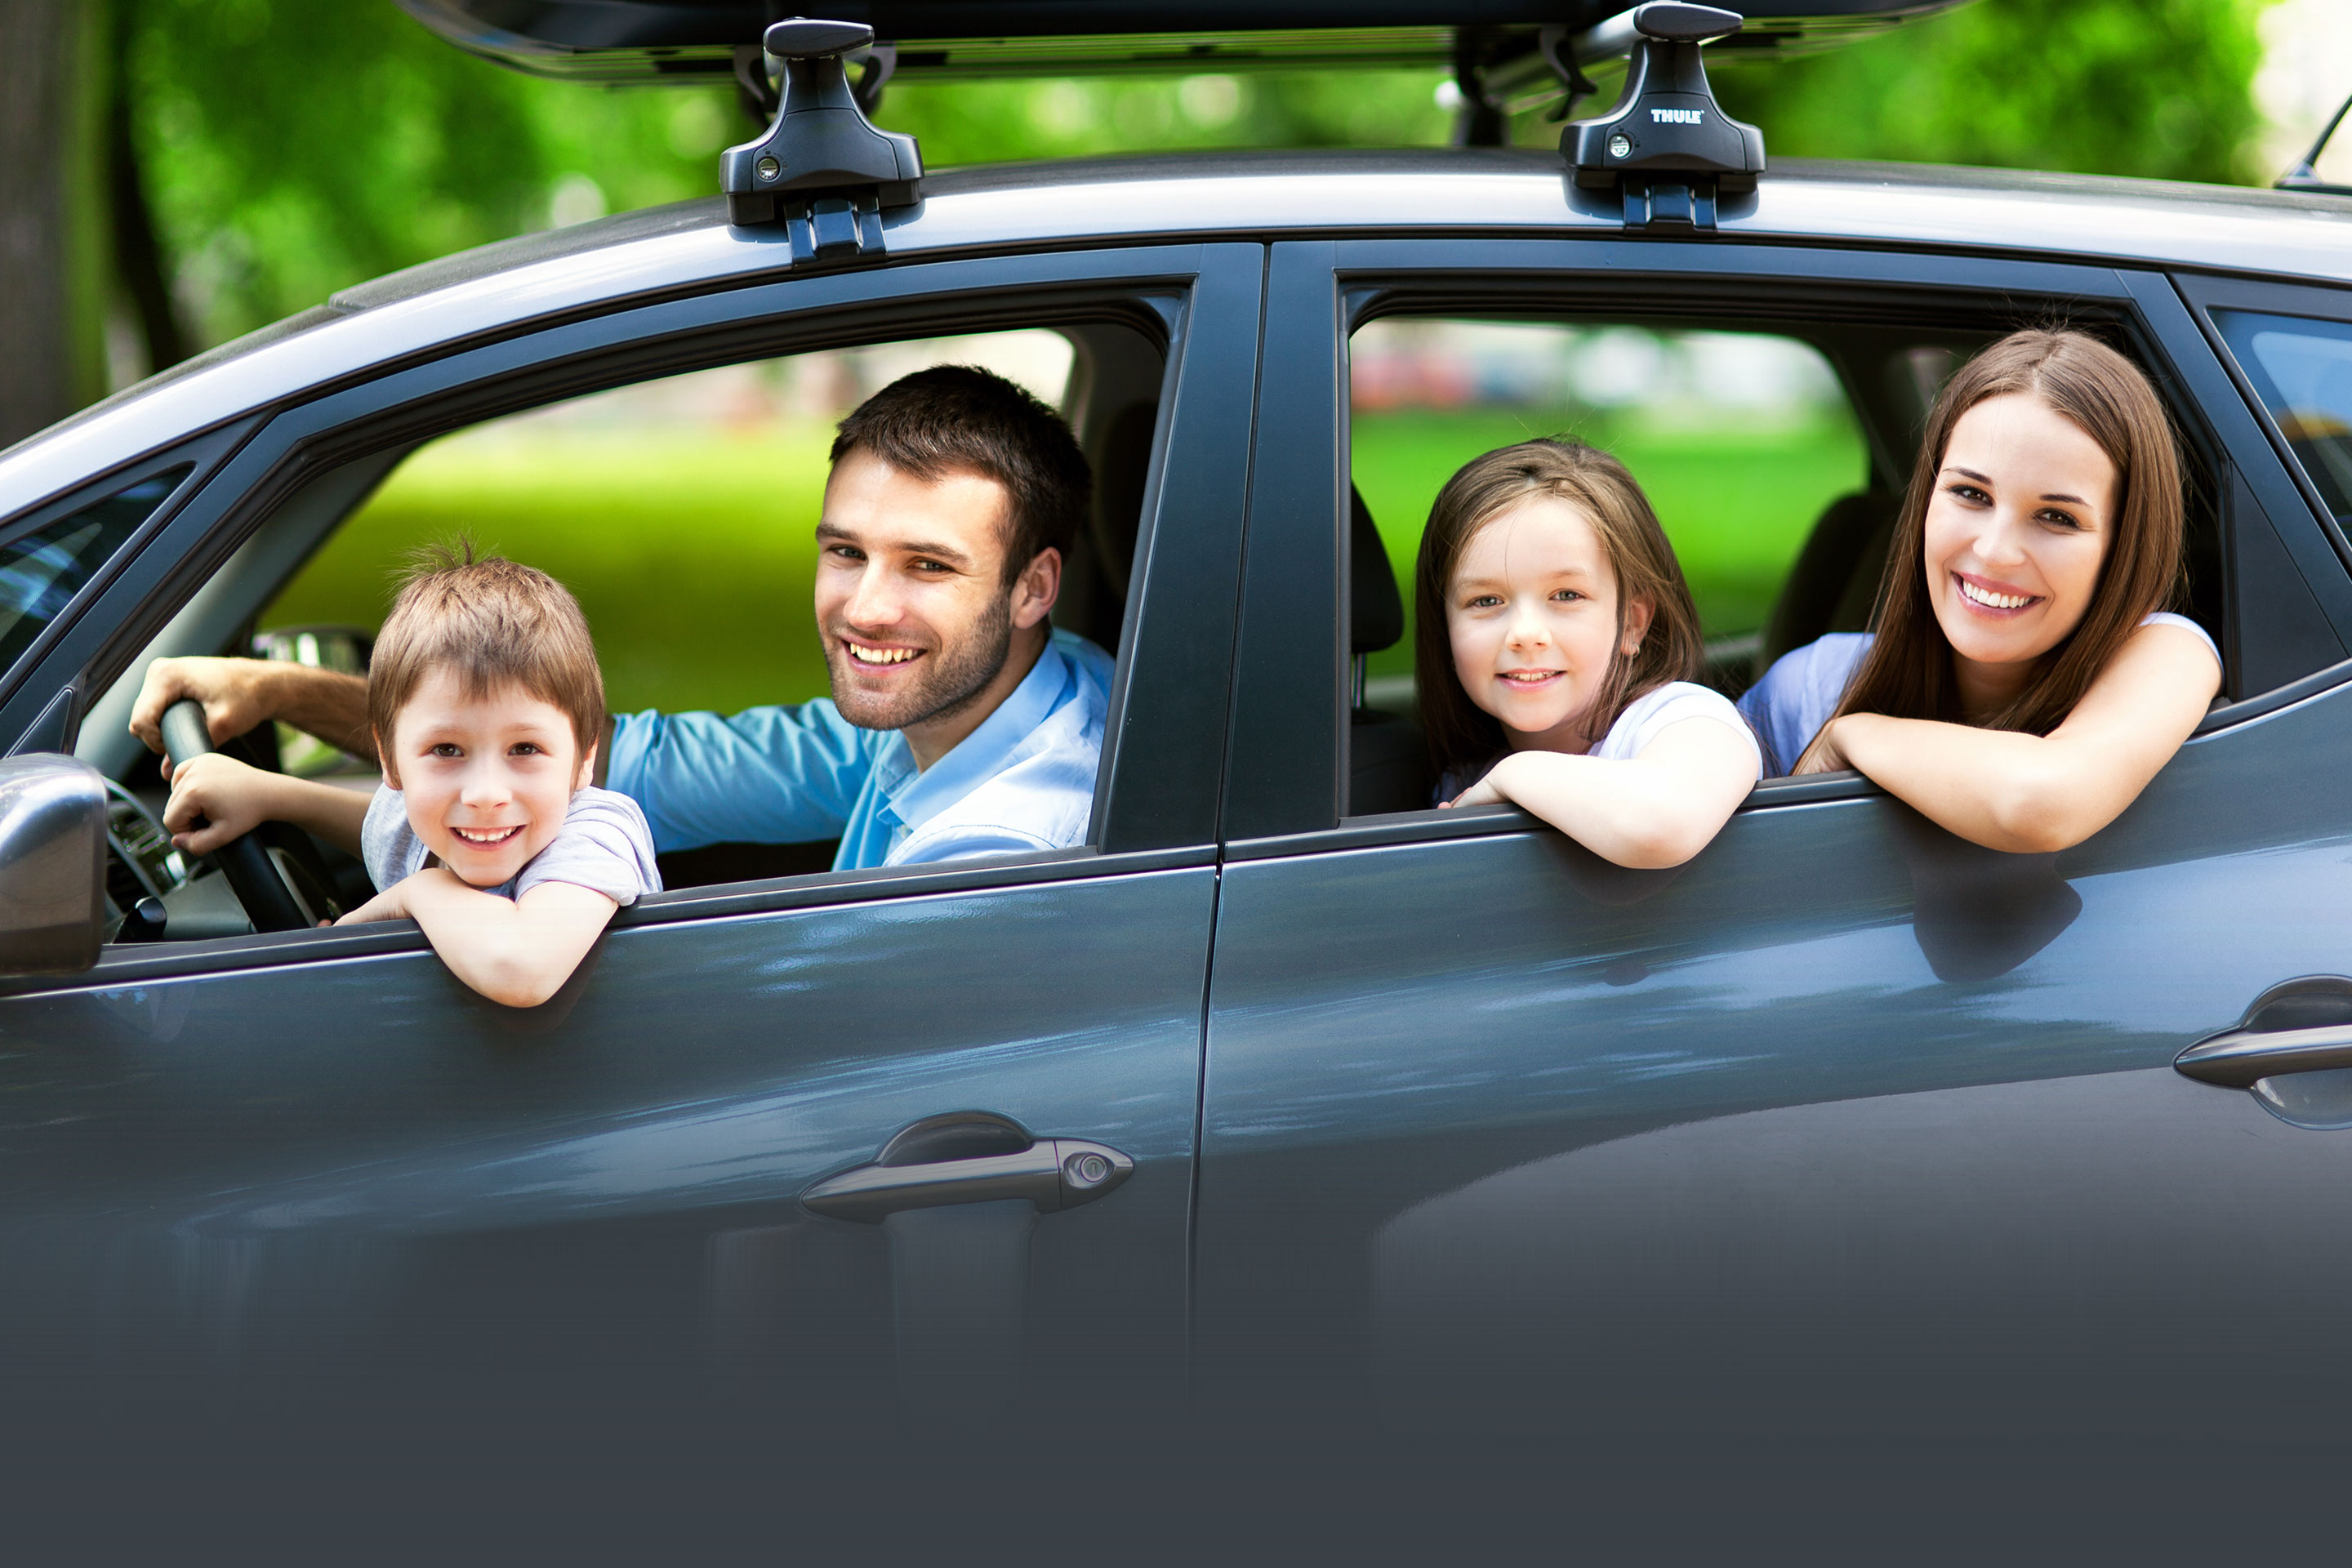 Сертификат для покупки автомобиля для семьи. Семейный автомобиль. Семейная машина. Семья в машине. Семейная машина для путешествий.